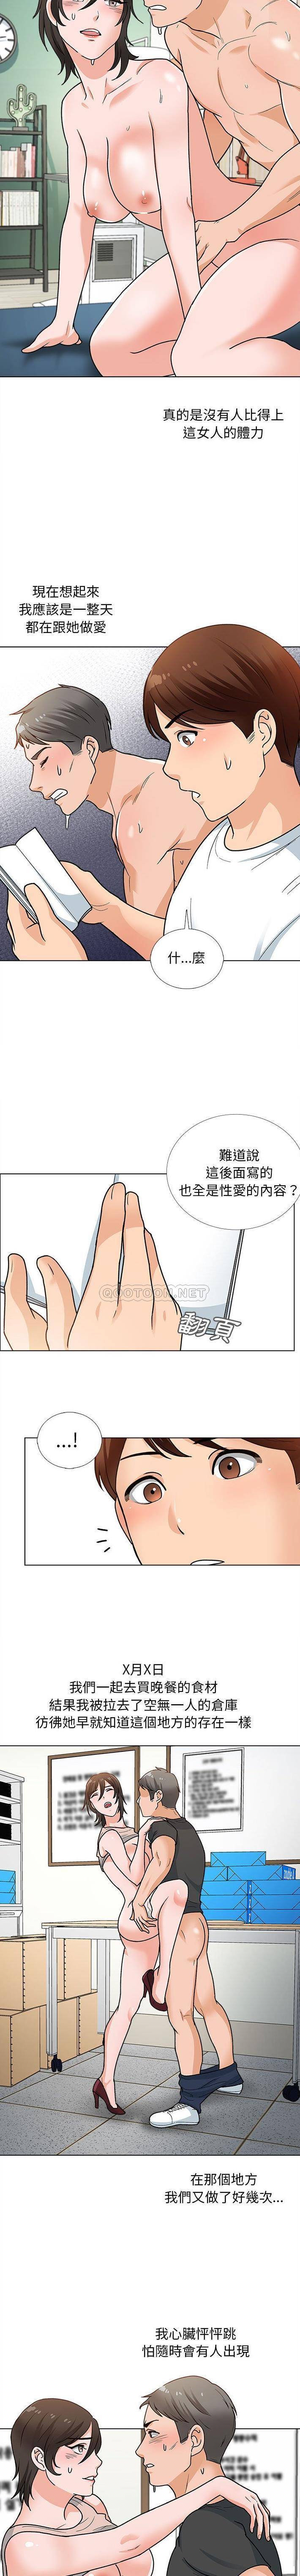 韩国污漫画 幸福公寓 第12话 10